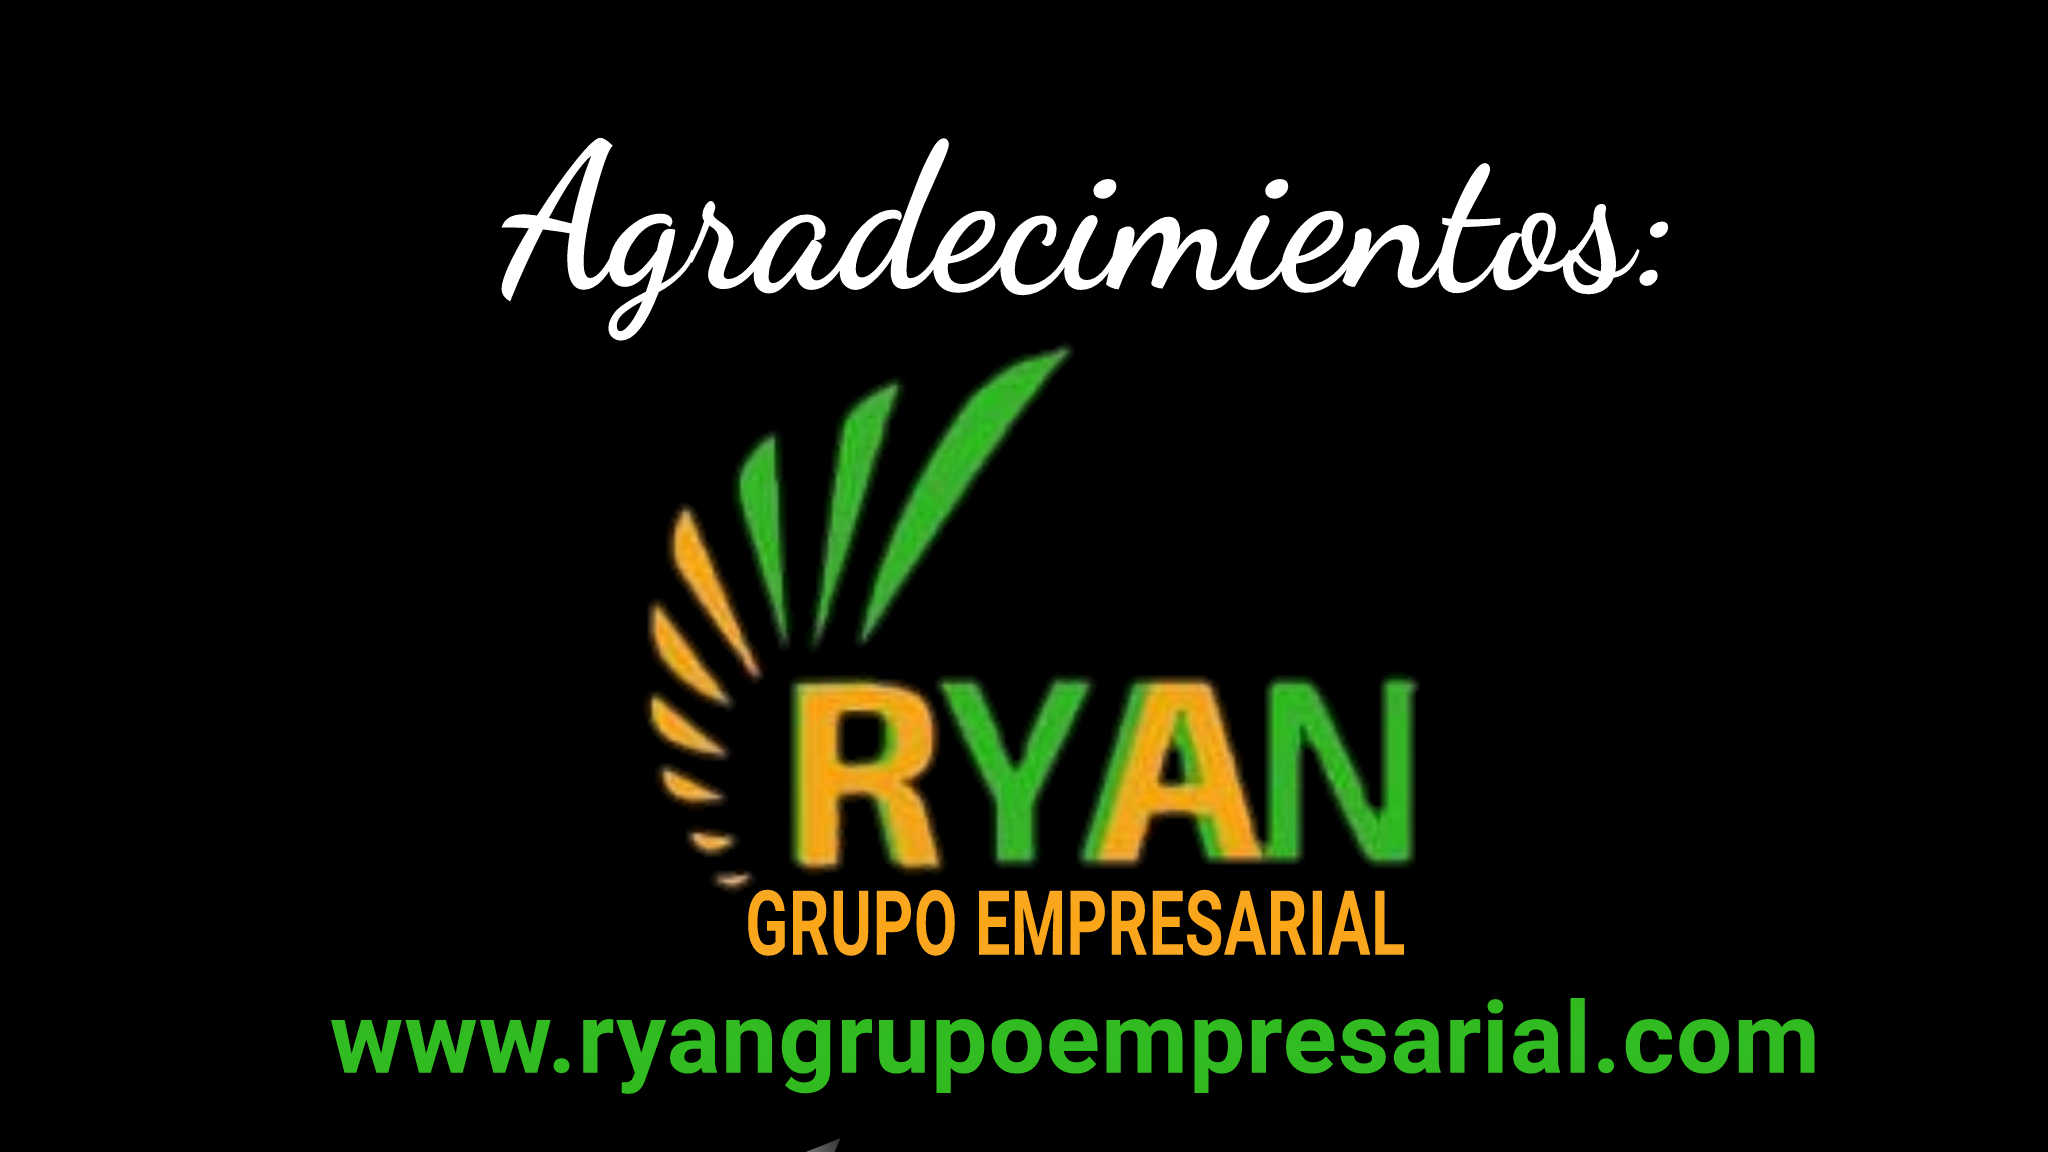 Ryan Grupo Empresarial